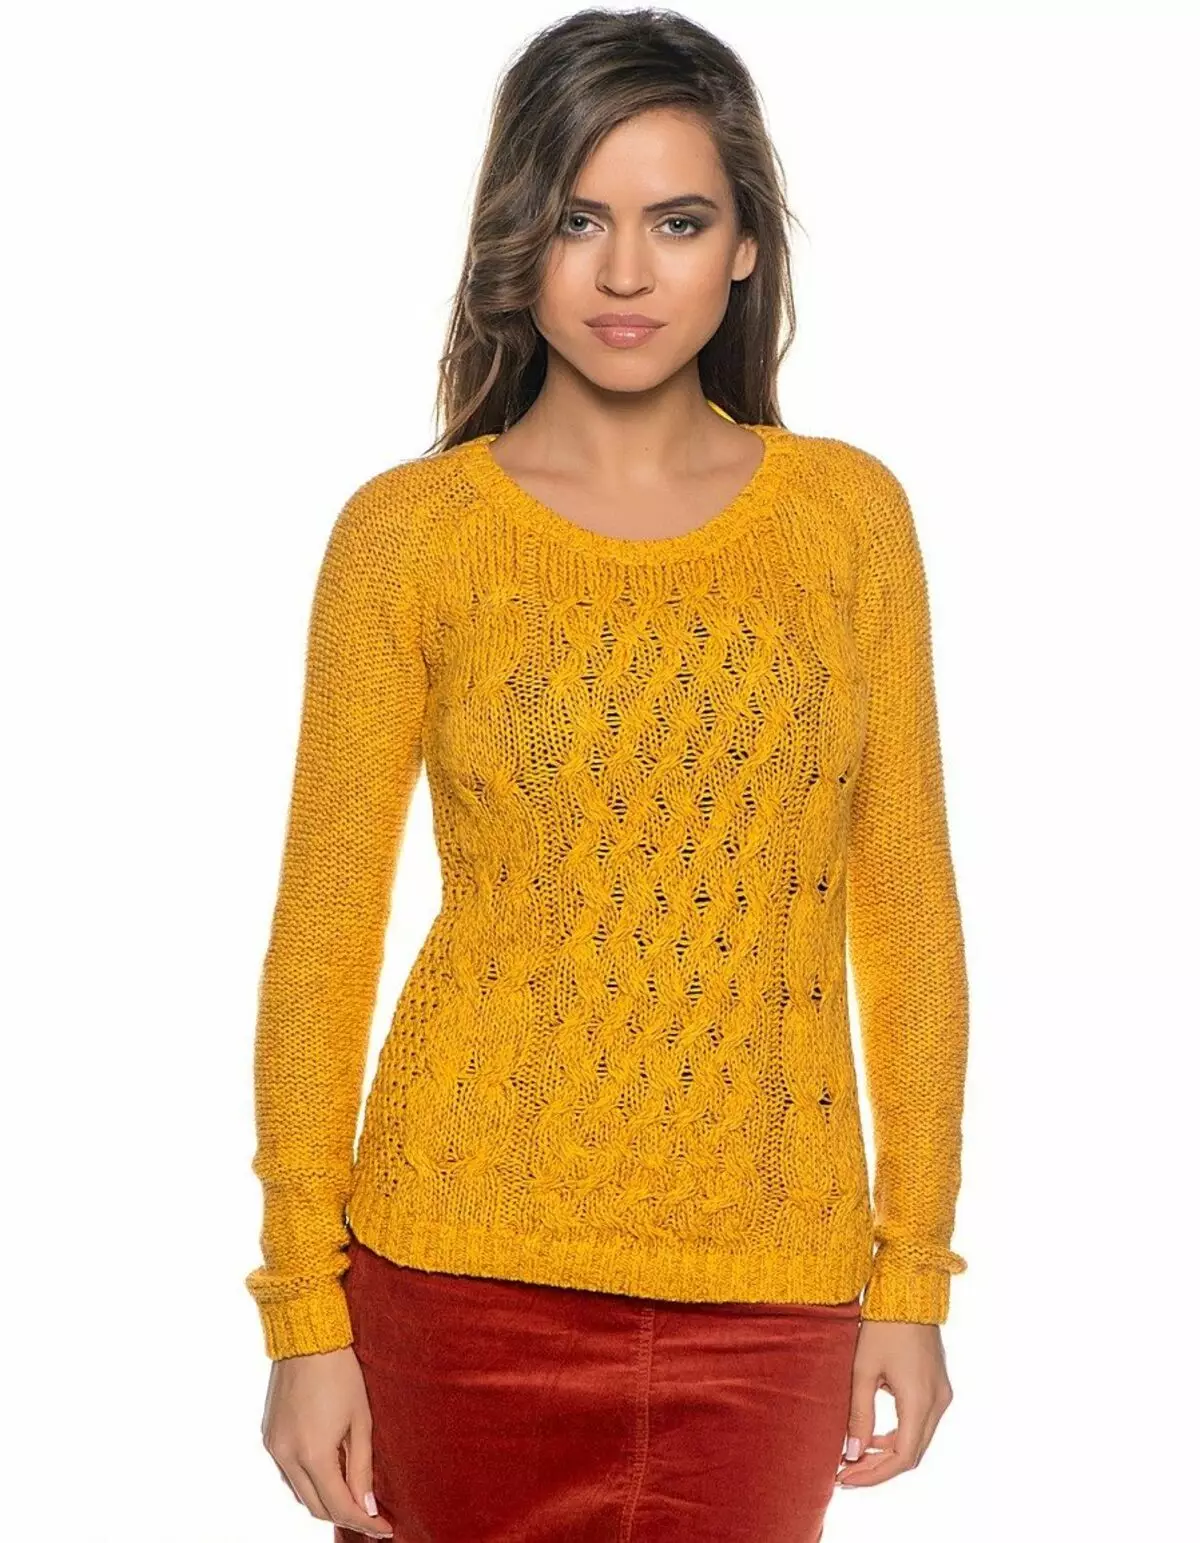 Co nosić żółty sweter (78 zdjęć) 1050_45